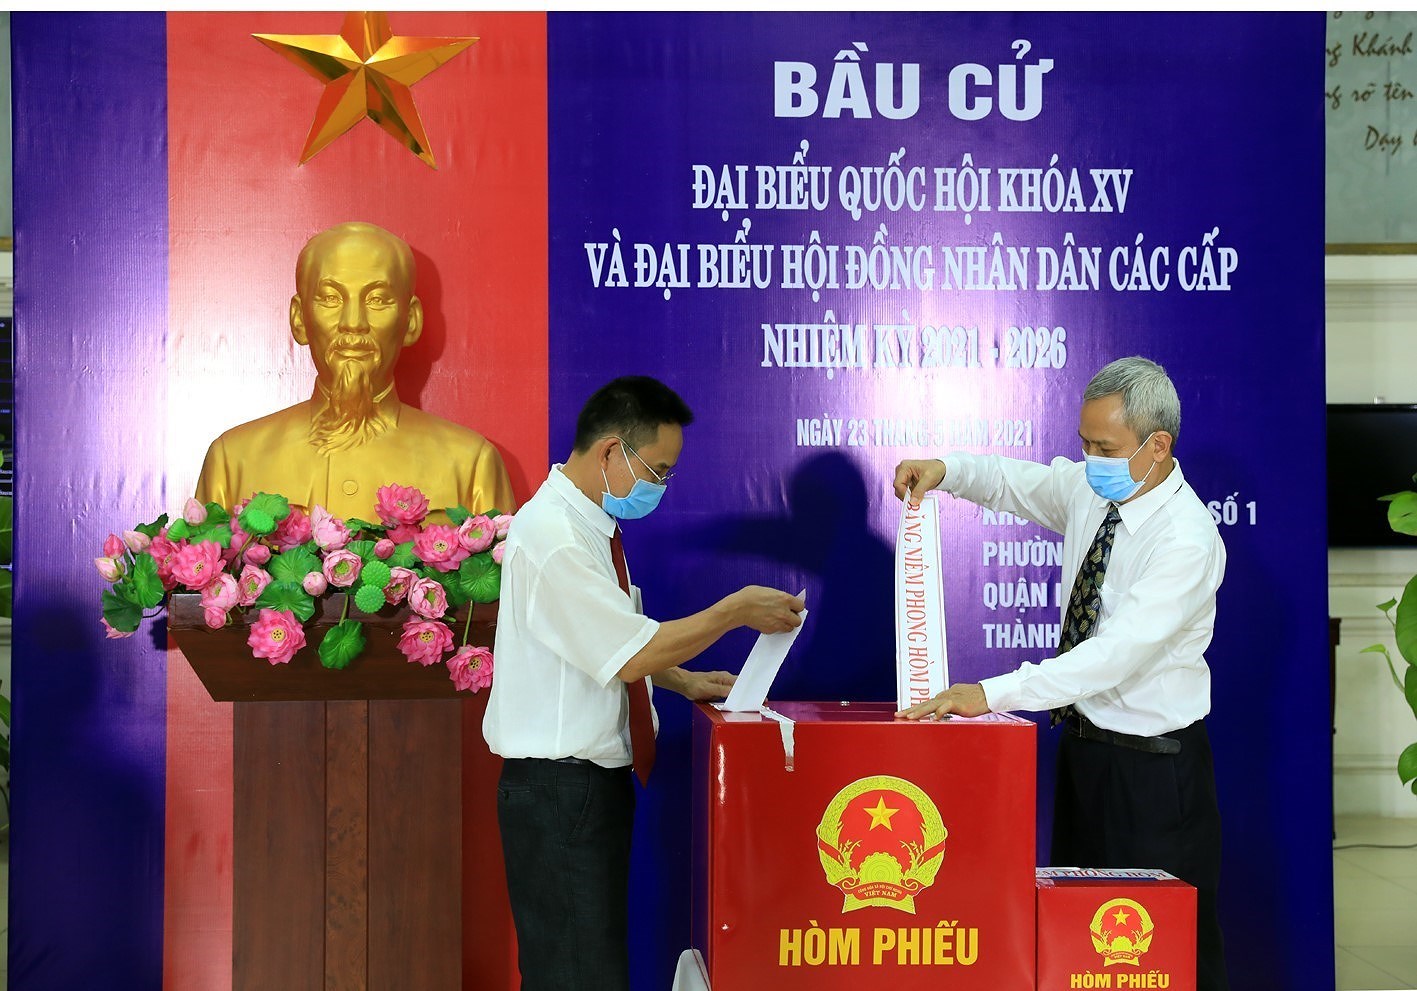 Le Vietnam est un point positif en termes de composition des deputes de l’Assemblee nationale hinh anh 2